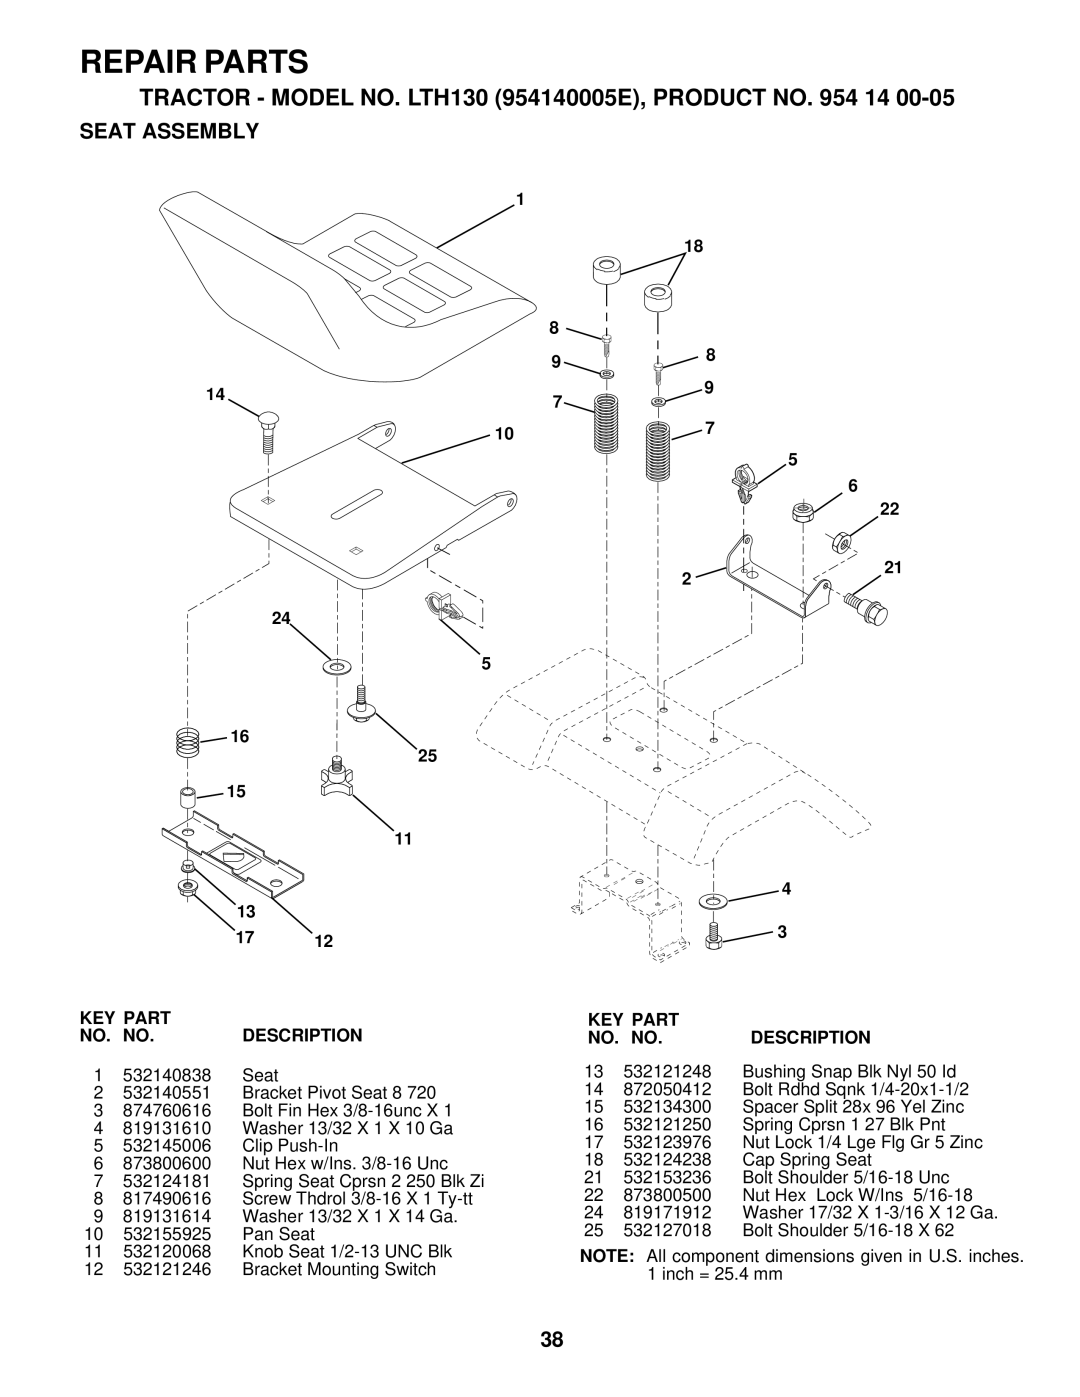 Husqvarna LTH130 owner manual Repair Parts, Seat Assembly, Key Part, No. No, Description 